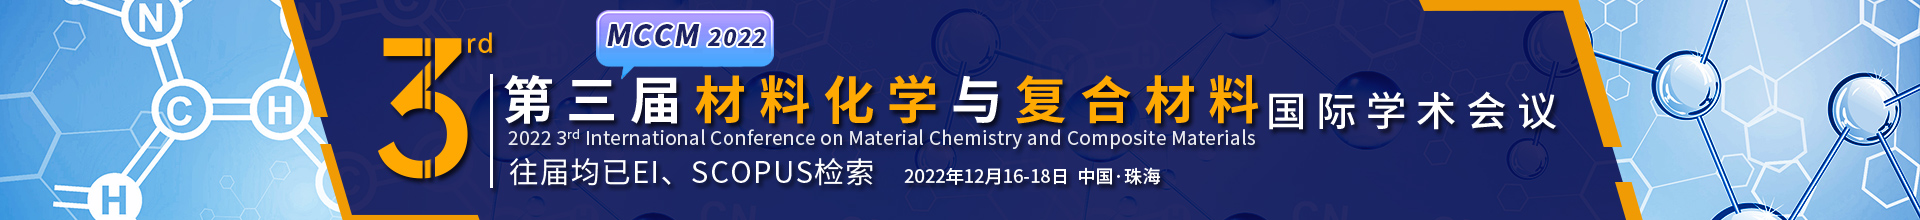 12月珠海-MCCM-学术会议云-20220421.jpg